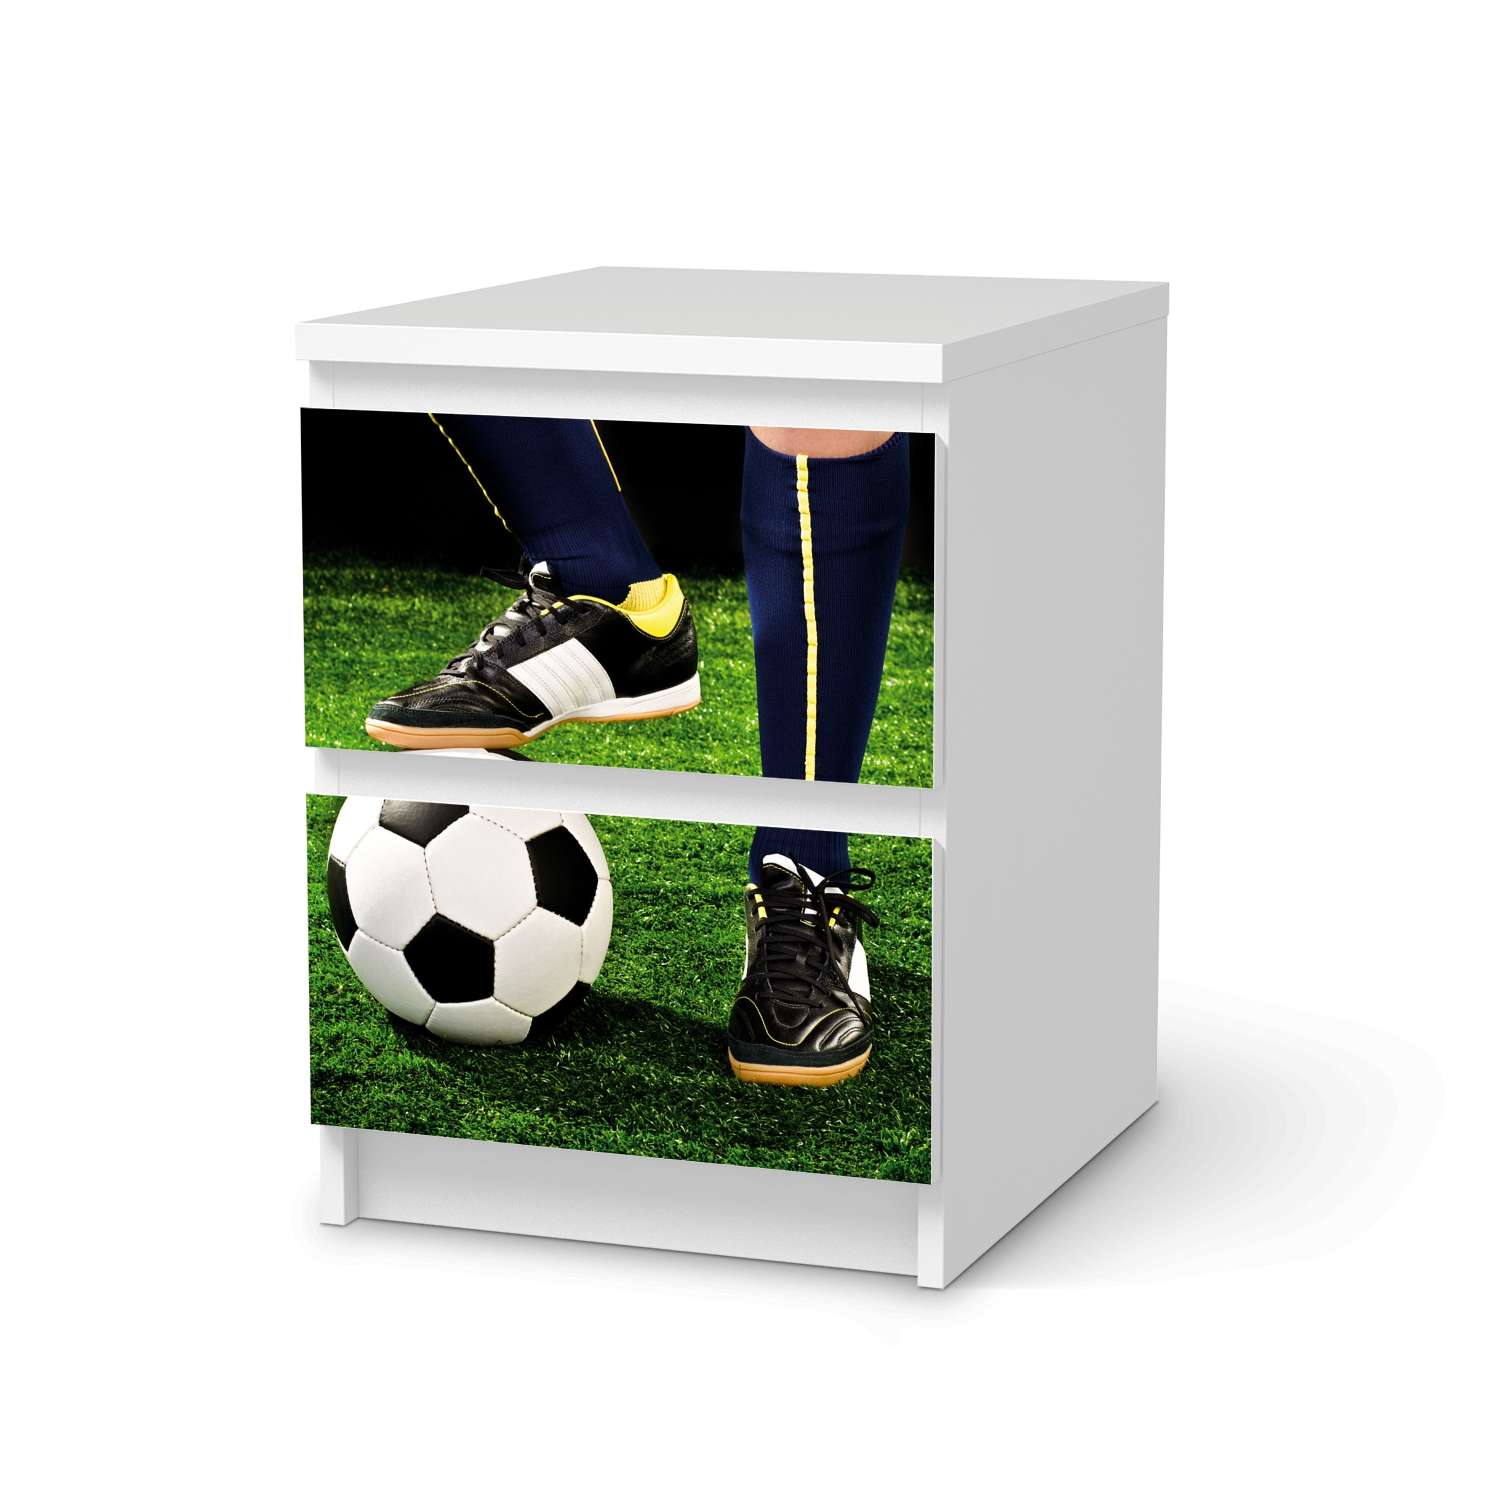 M?belfolie IKEA Malm Kommode 2 Schubladen - Design: Fussballstar von creatisto